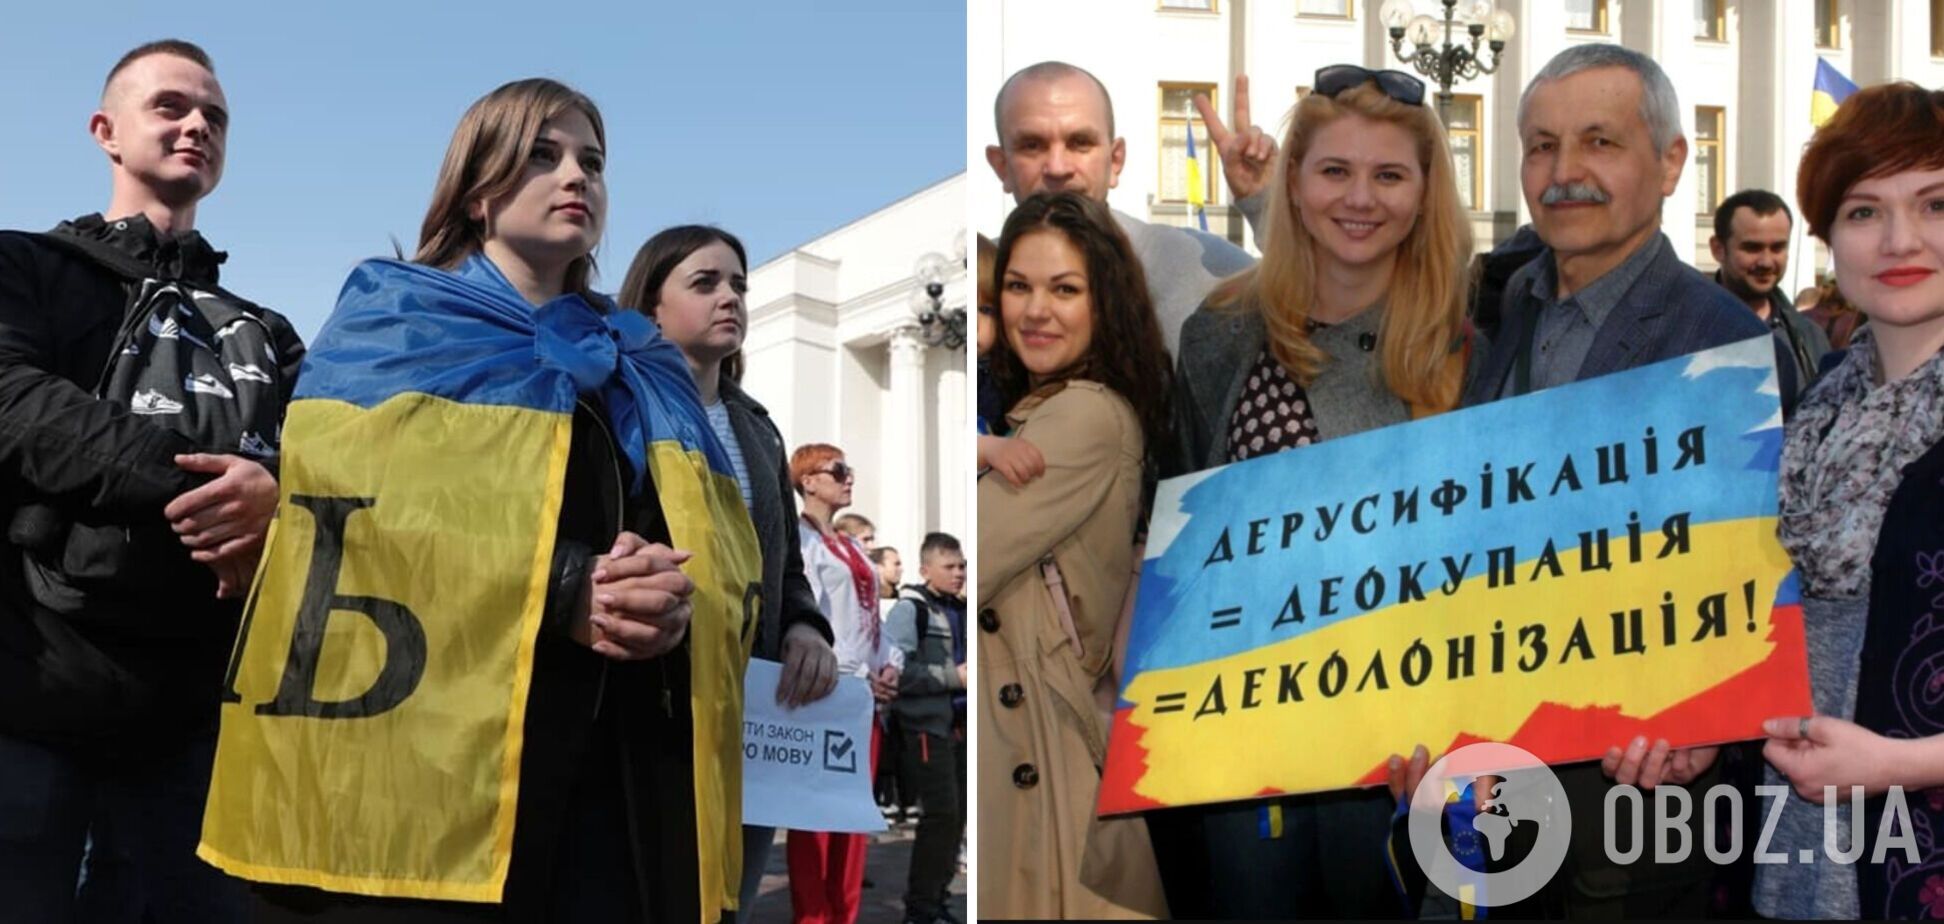 Все, кто еще не решился перейти на украинский: психаните – и сделайте это!